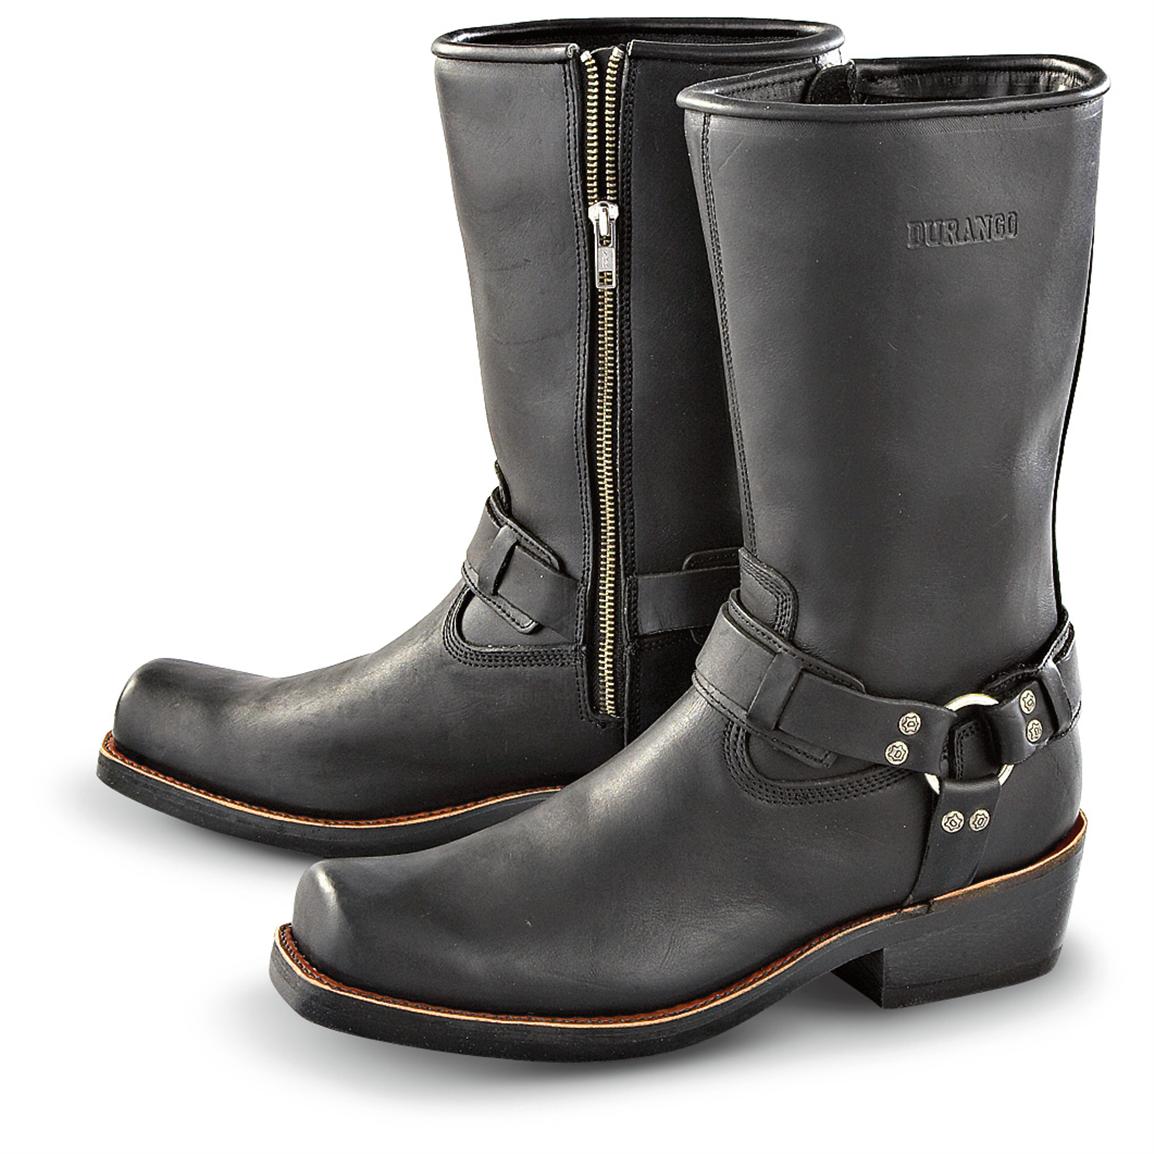 Men's Durango Boot® Side - zip Harness Boots, Black - 152475, Motorcycle & Biker Boots at